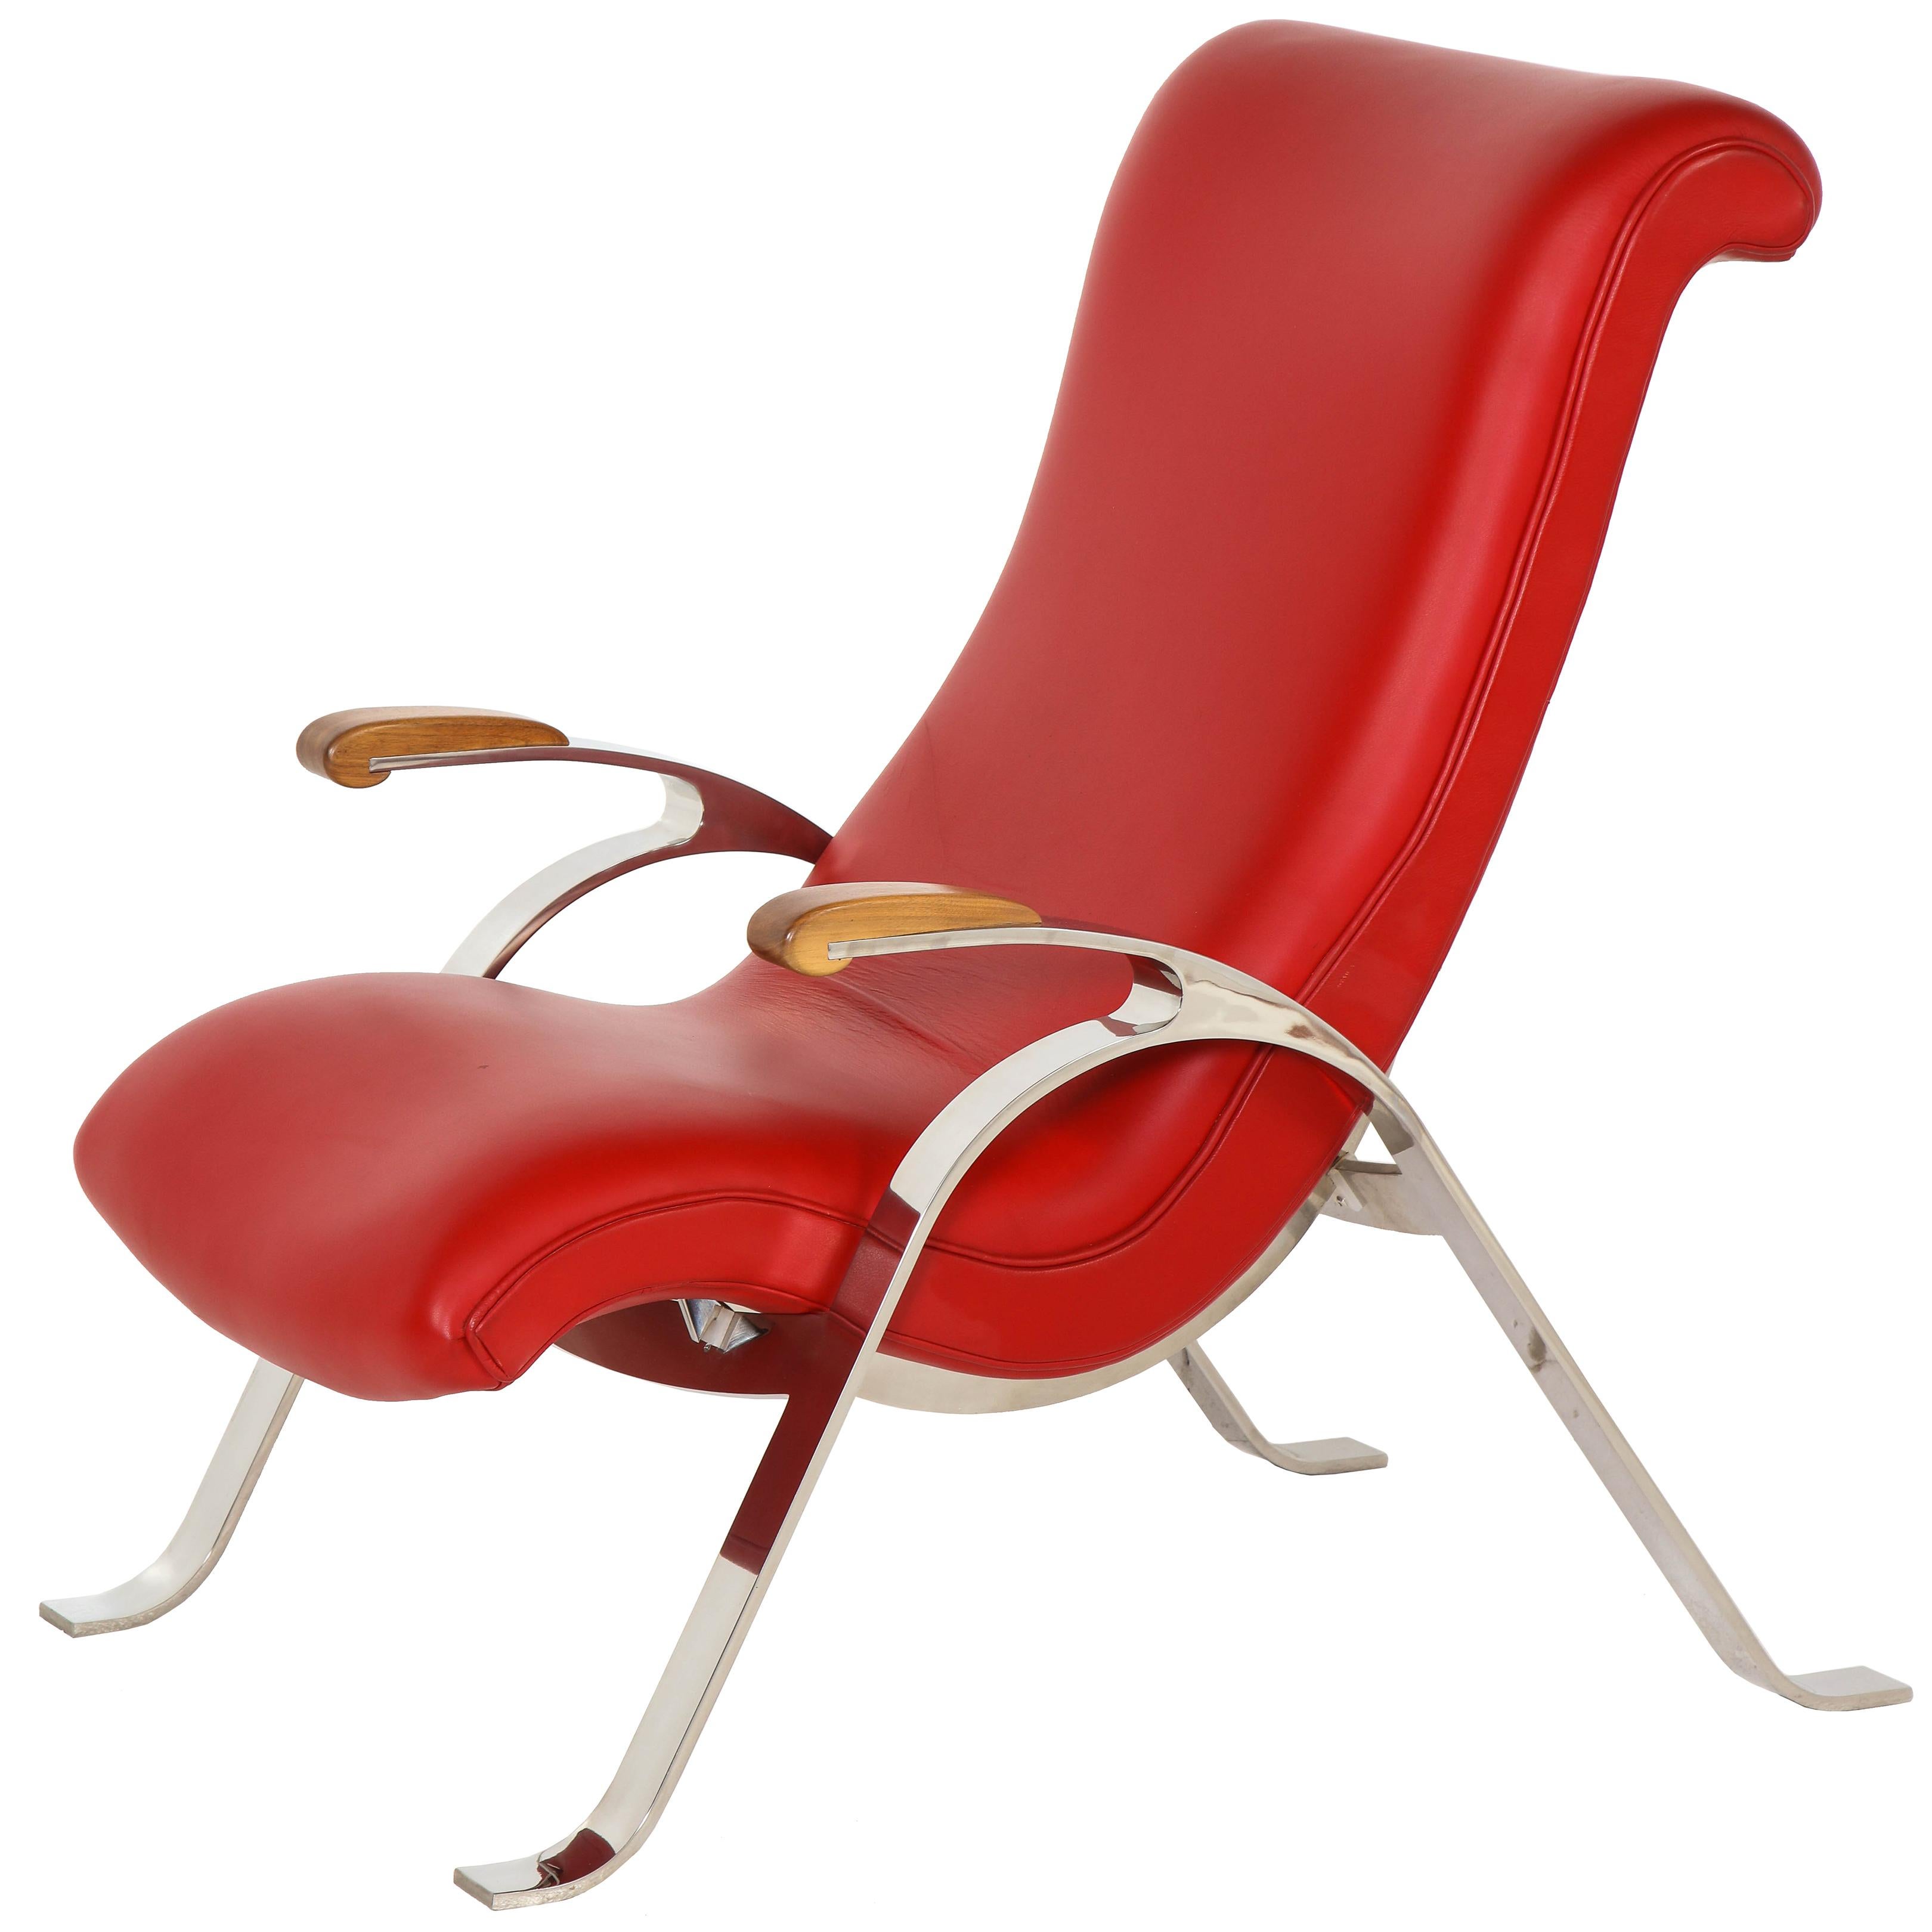 Chaise inclinable multifonctionnelle rouge en rouge proposée par Vladimir Kagan Design Group